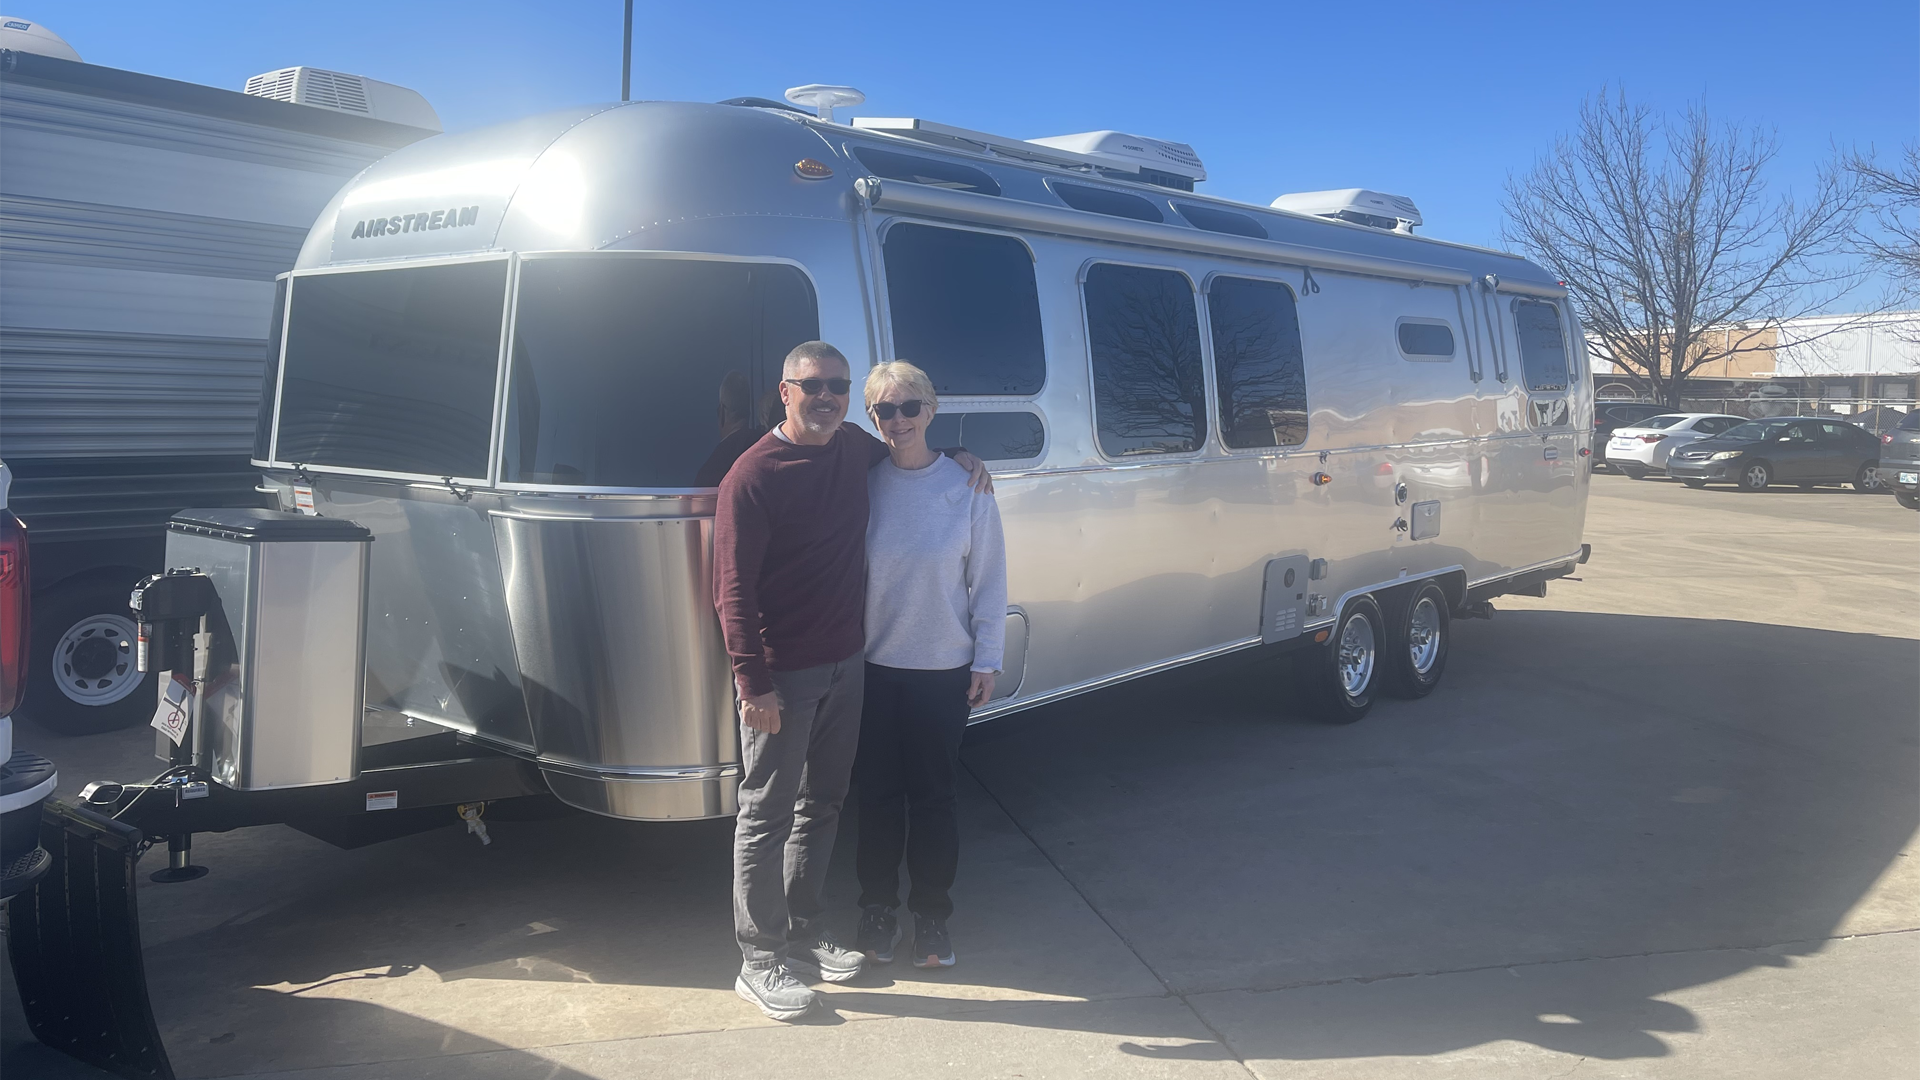 吉姆和苏珊微笑着在他们的新Airstream国际旅行房车露营车旁边拍照。